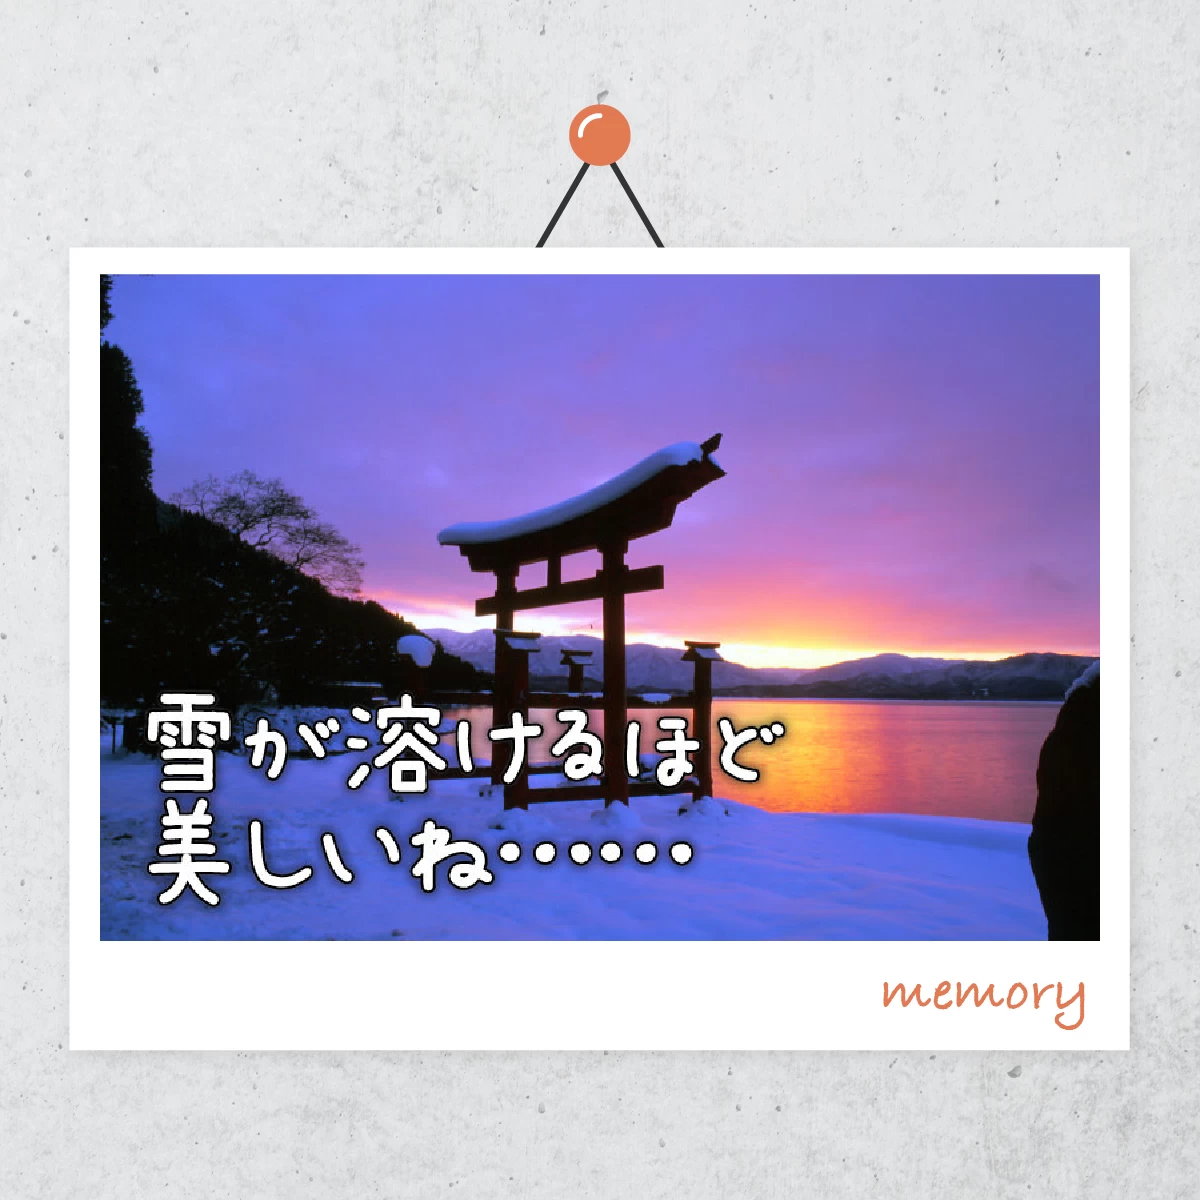 田沢湖でゲレンデデート  冬の乳頭温泉も楽しむ旅